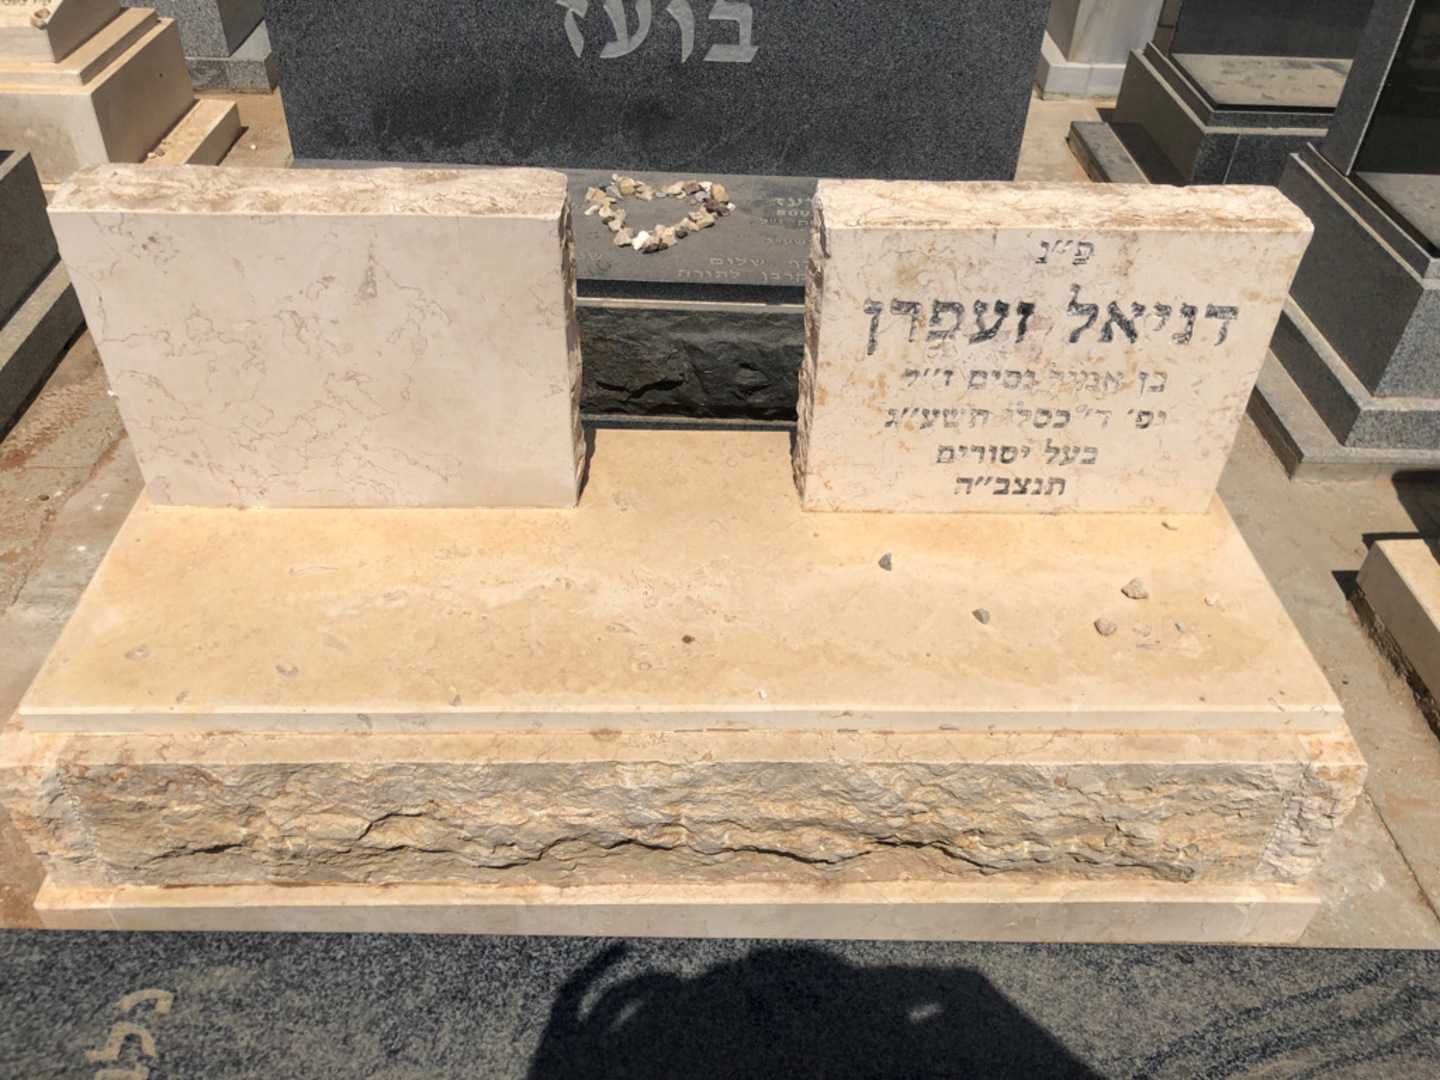 קברו של דניאל זעפרן. תמונה 2